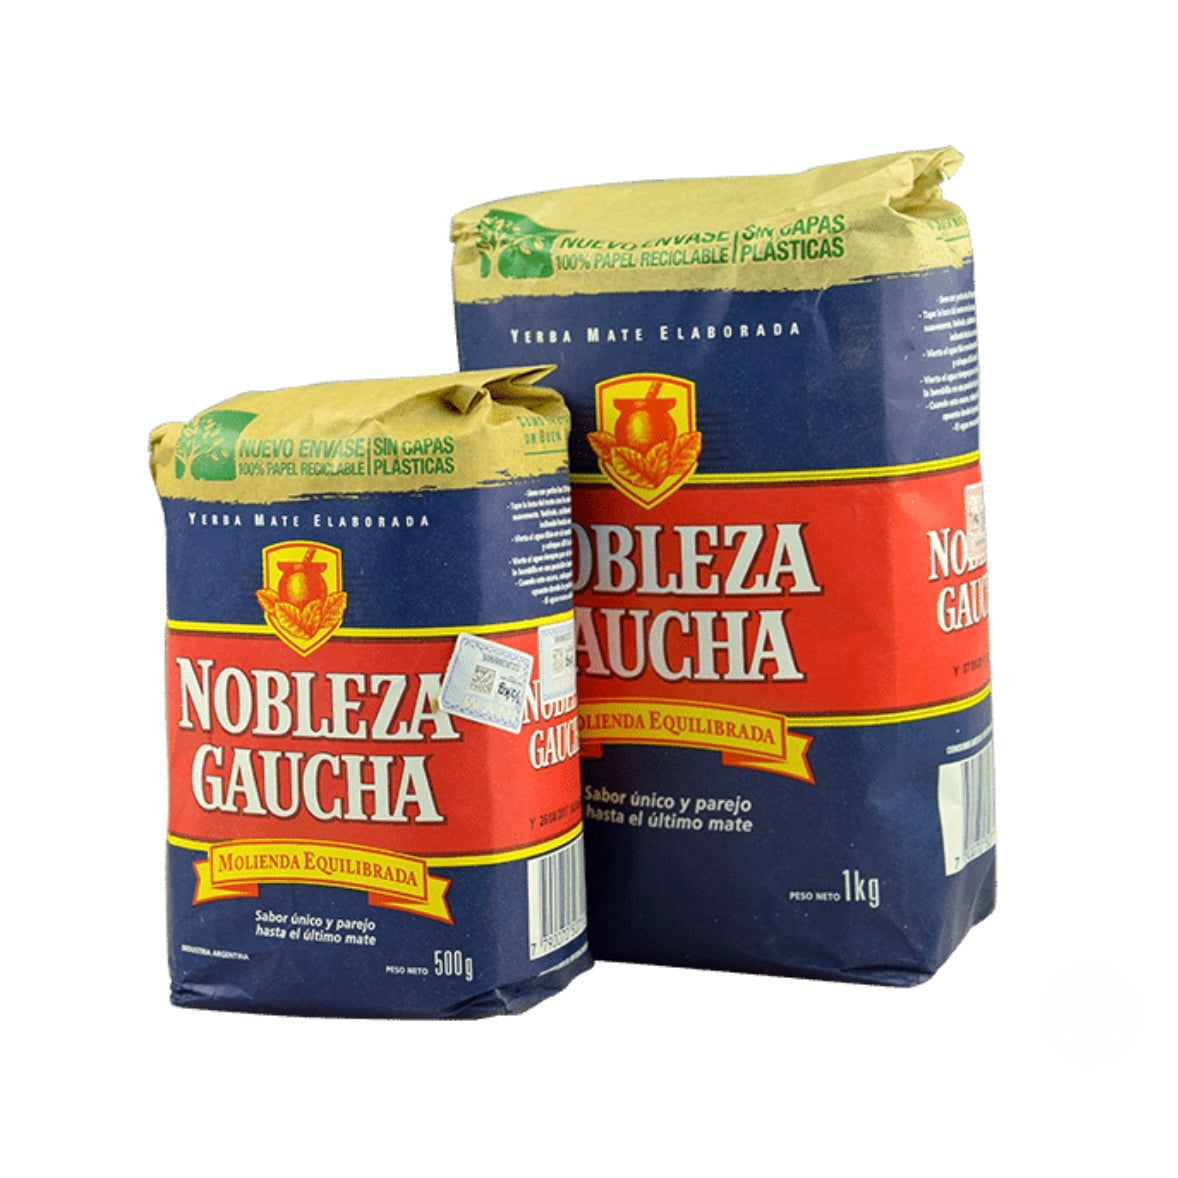 NOBLEZA GAUCHA - YERBA MATE in confezione da 500gr e 1kg - clorophilla-shop